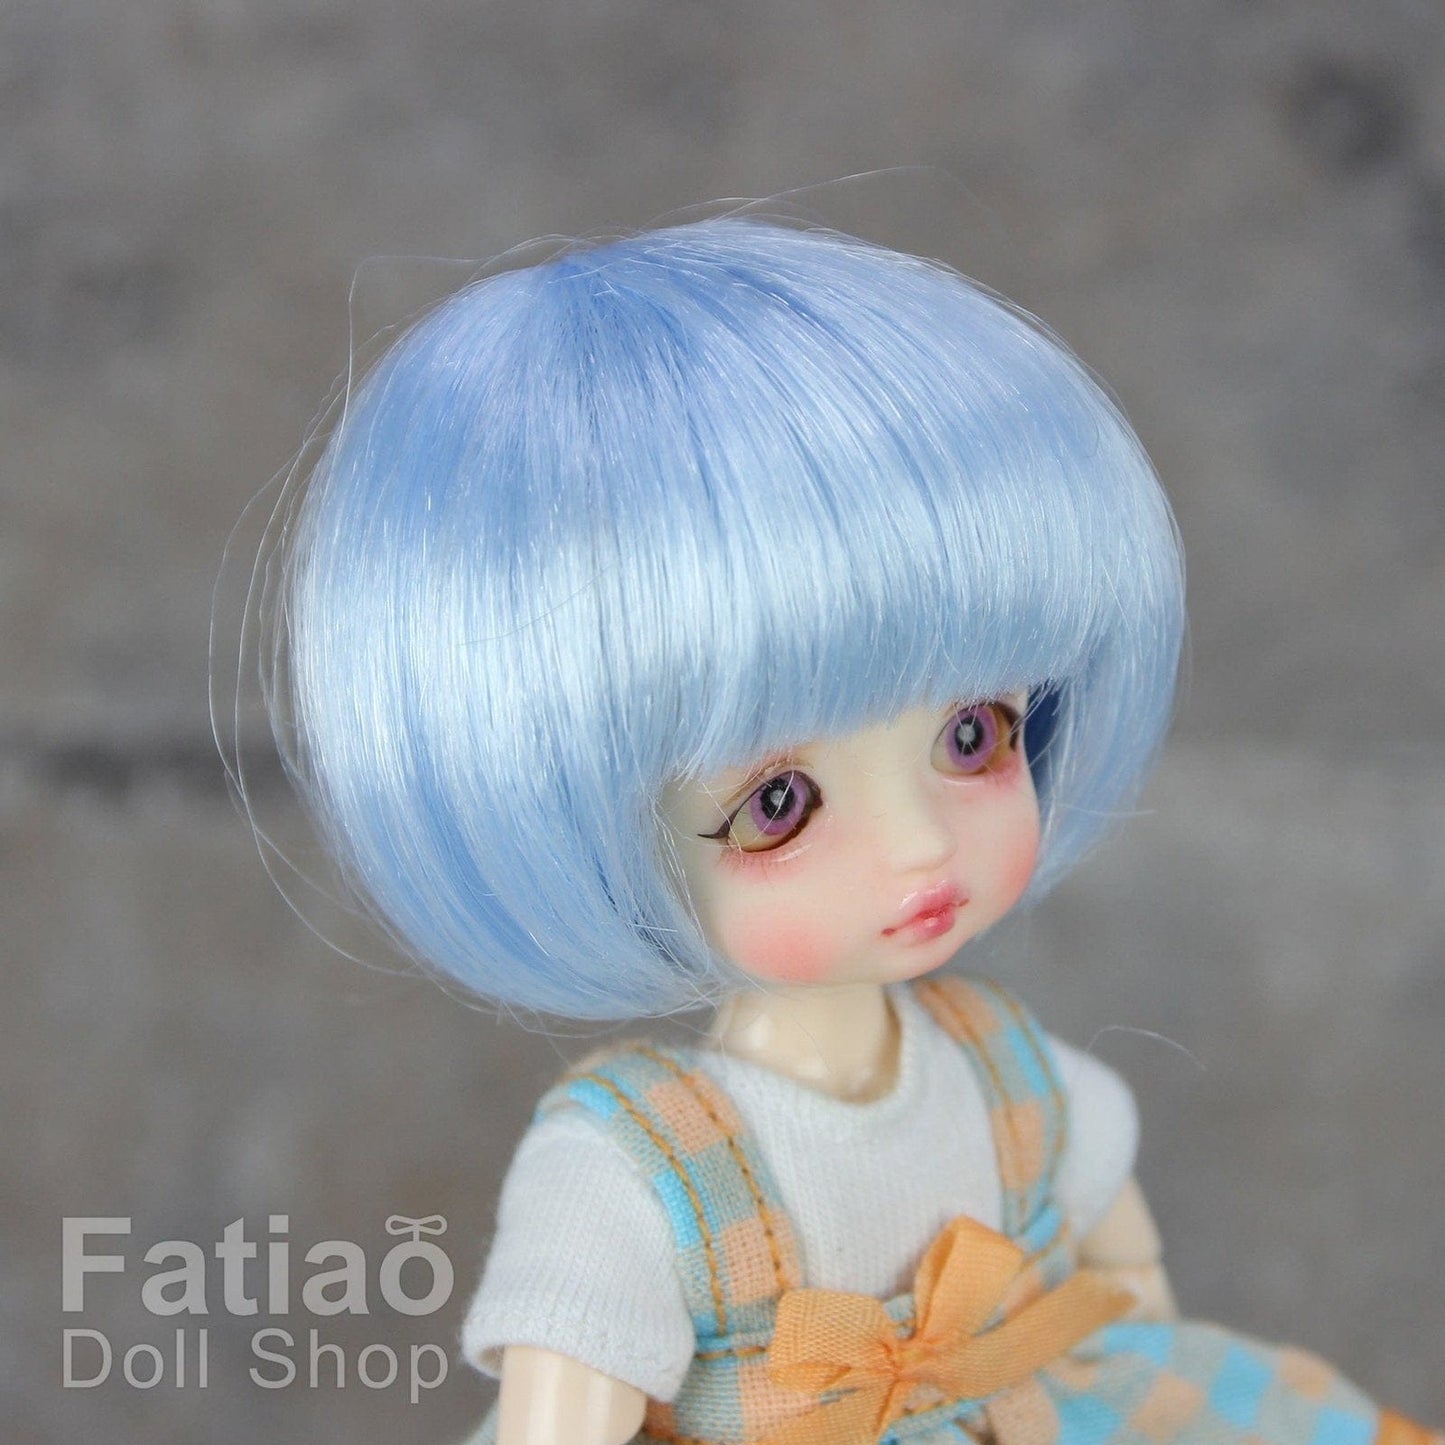 【Fatiao Doll Shop】FWF-256 娃用假髮 多色 / 3-4吋 BJD 12分 pukipuki